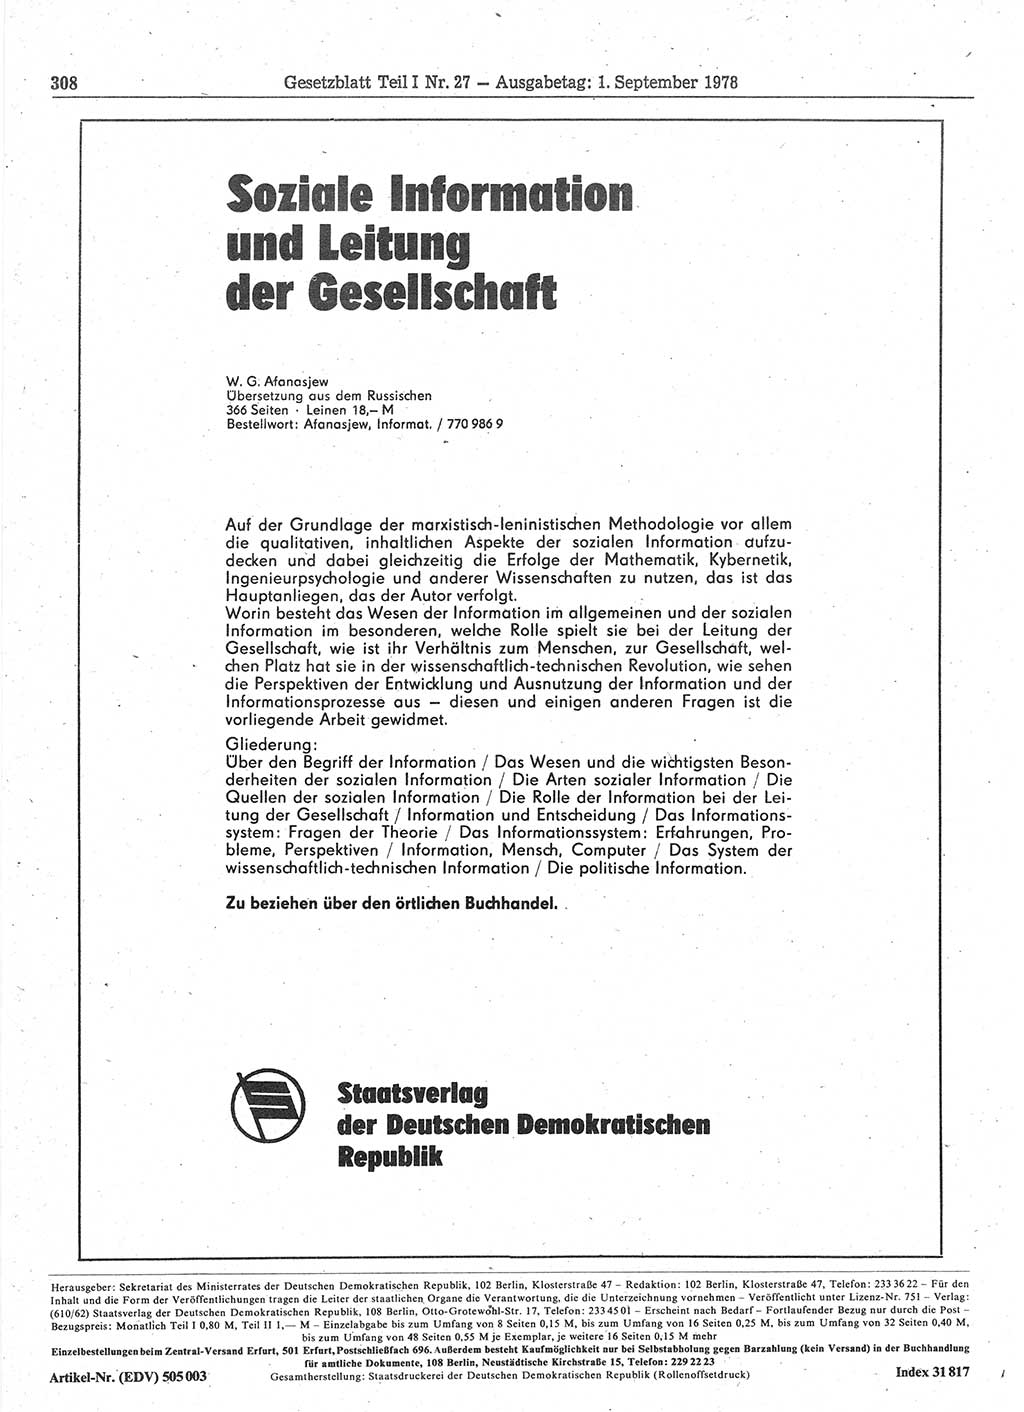 Gesetzblatt (GBl.) der Deutschen Demokratischen Republik (DDR) Teil Ⅰ 1978, Seite 308 (GBl. DDR Ⅰ 1978, S. 308)